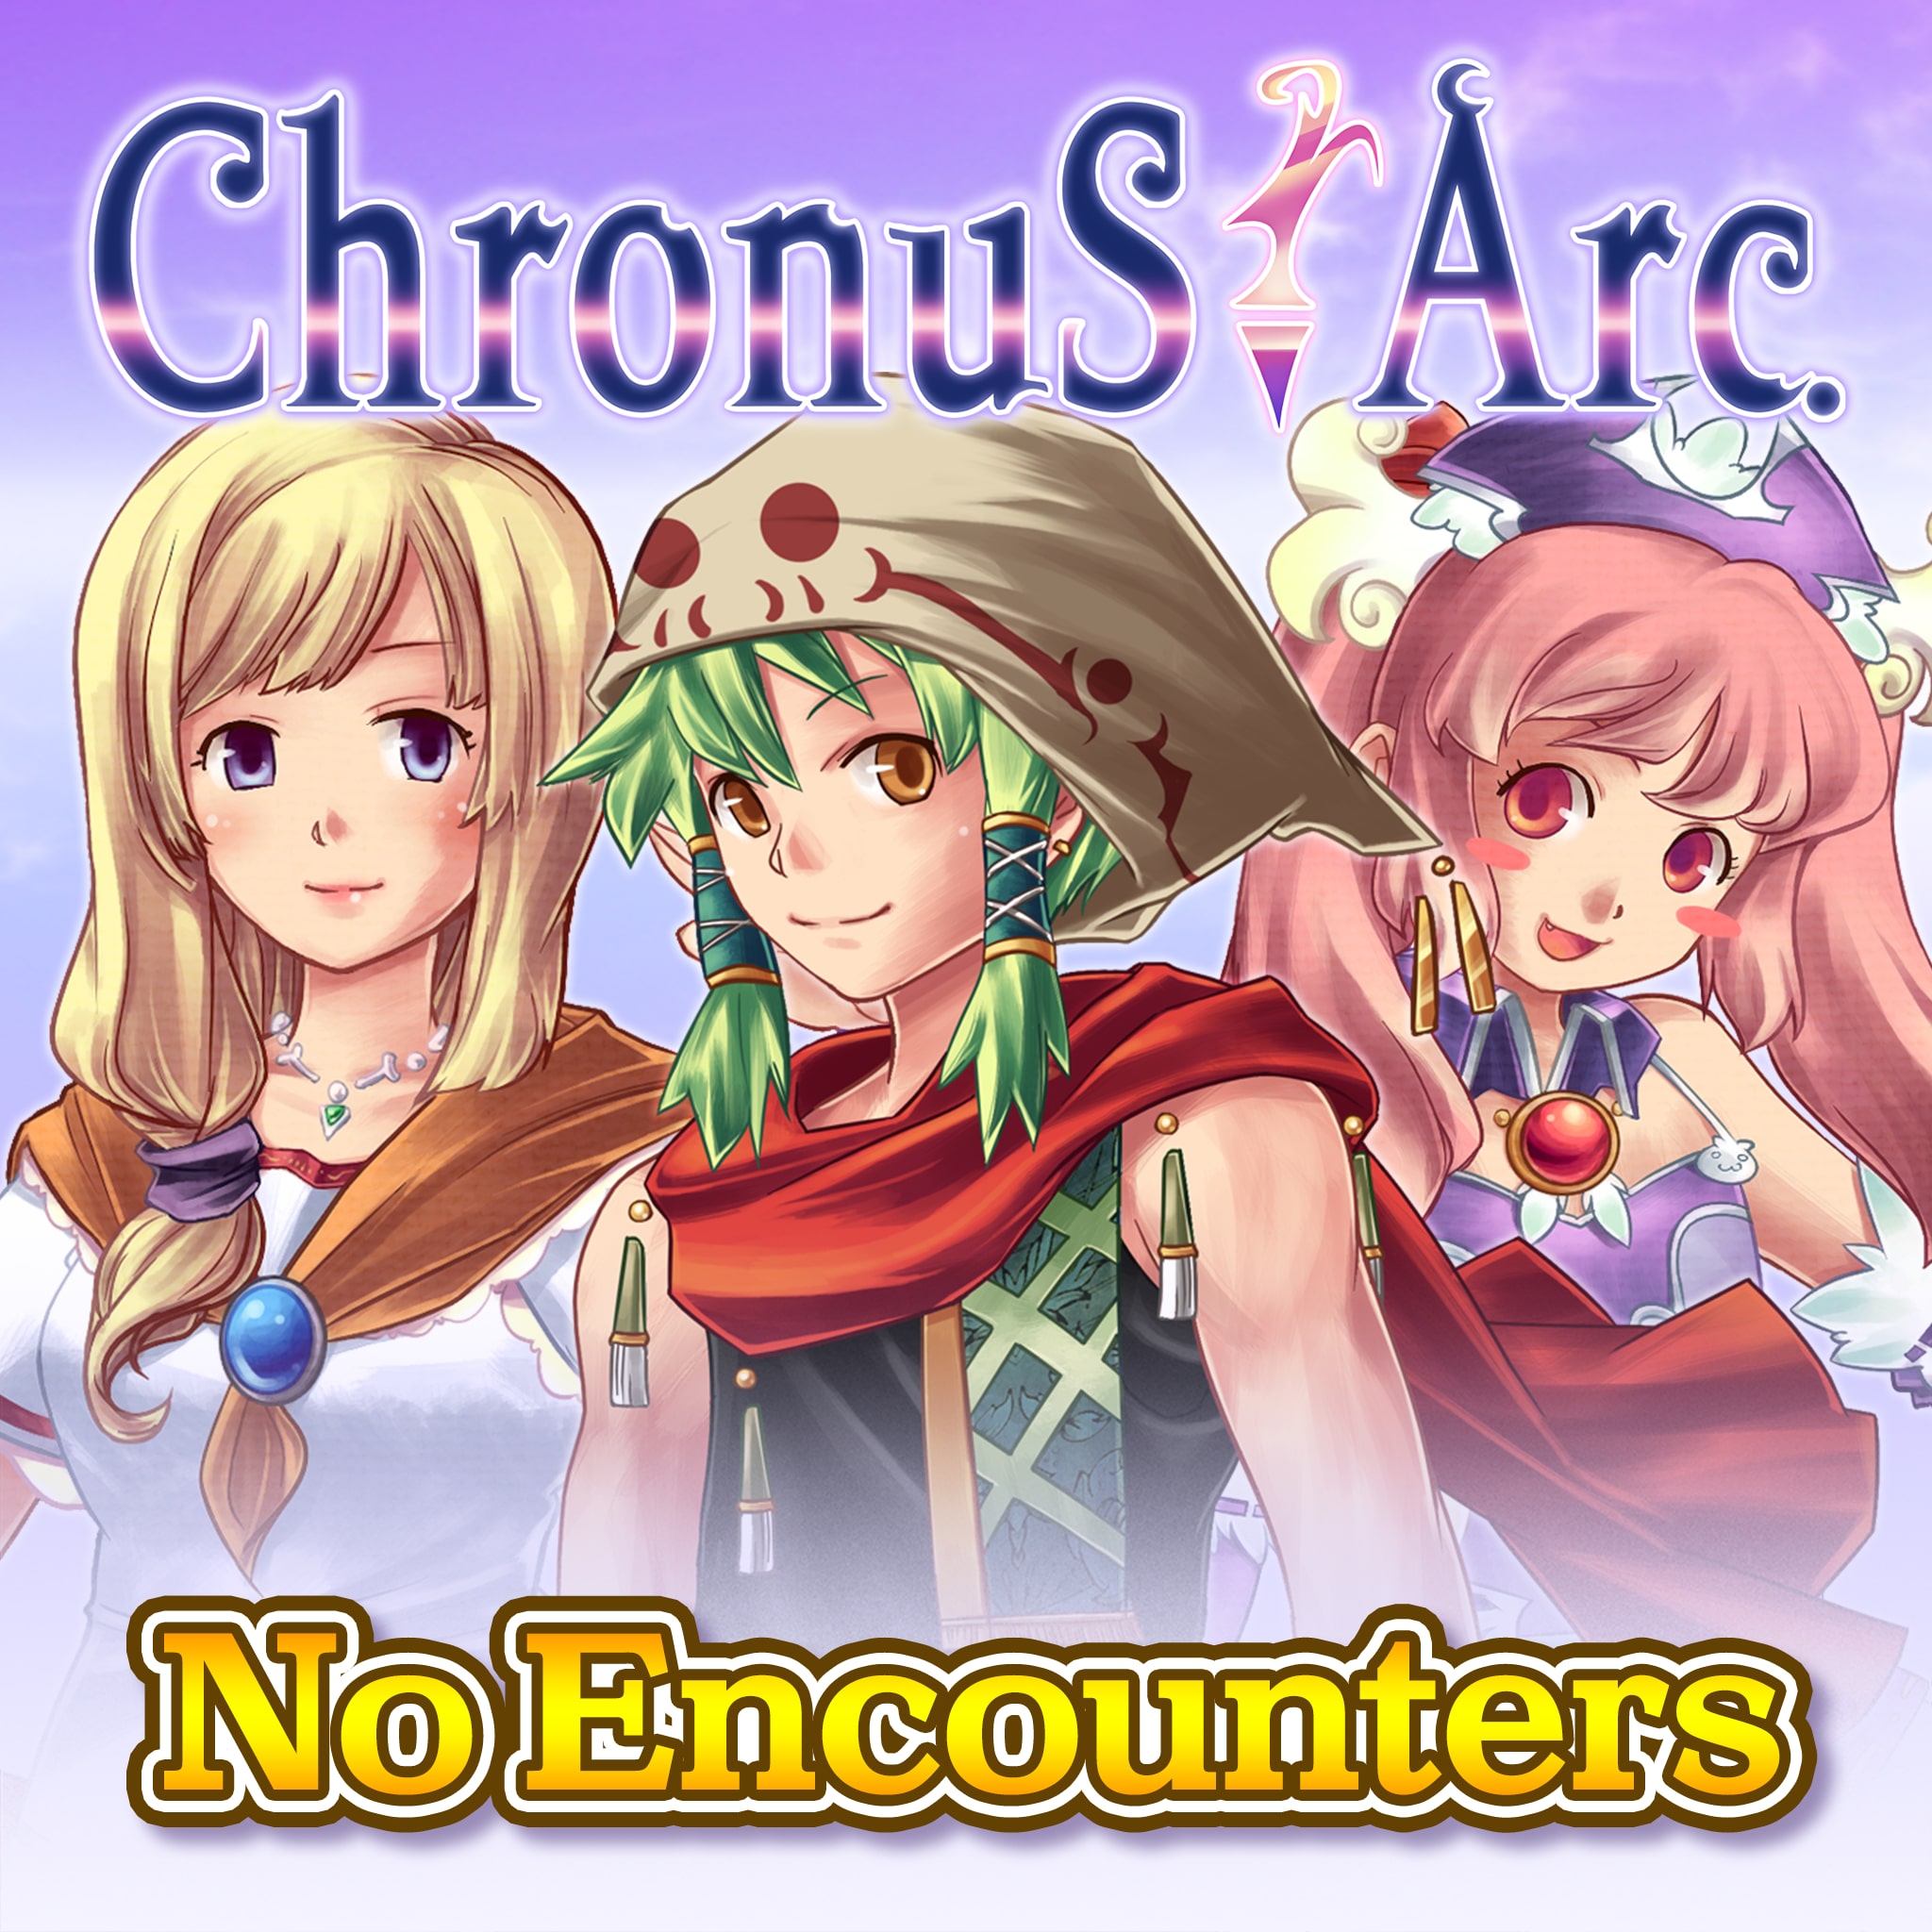 No Encounters - Chronus Arc